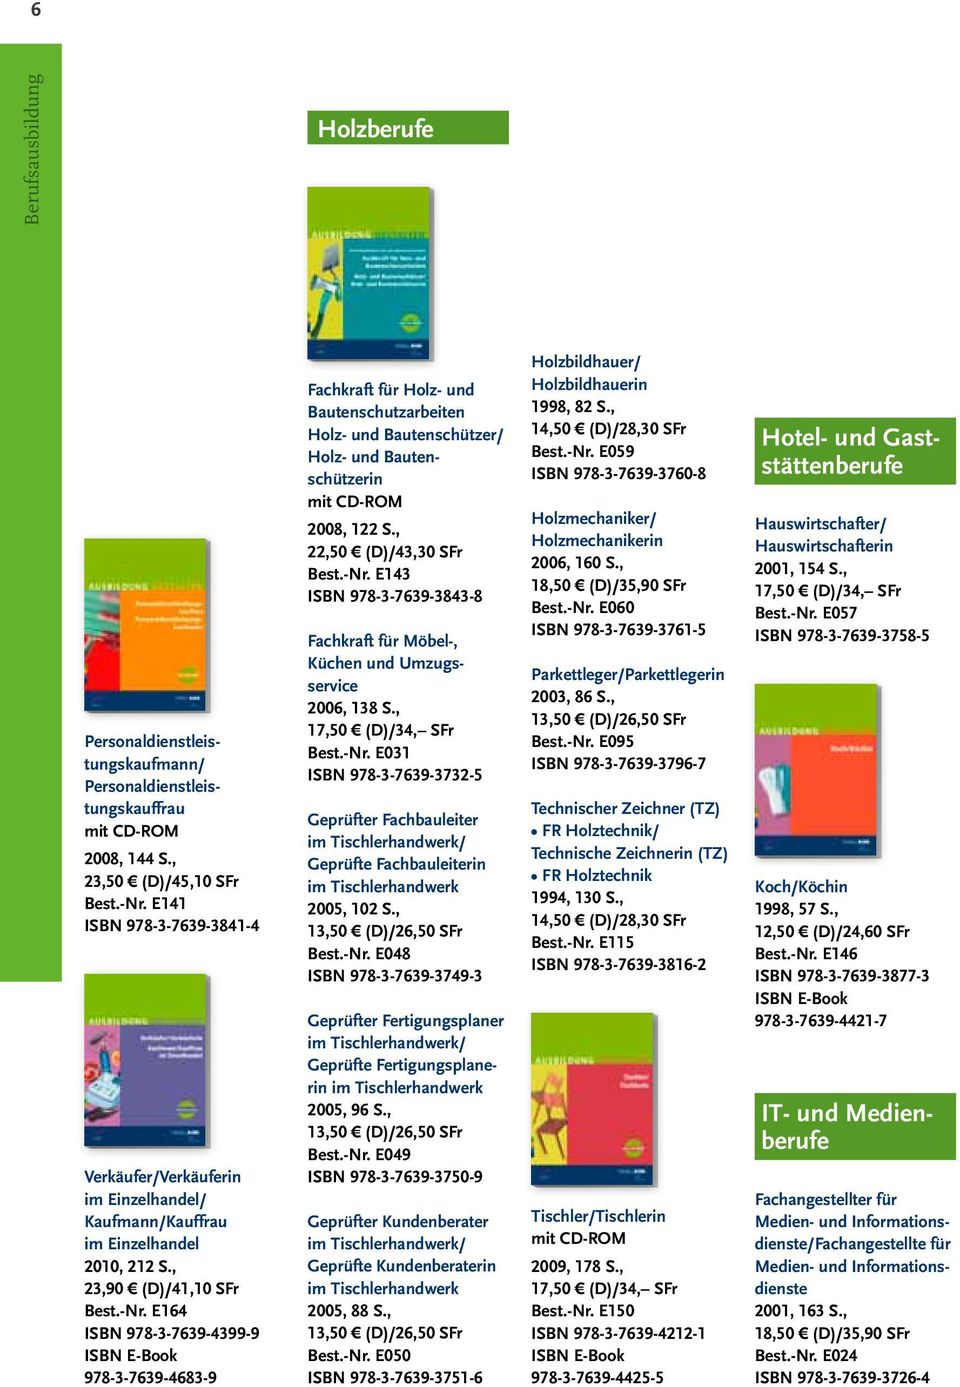 E164 ISBN 978-3-7639-4399-9 978-3-7639-4683-9 Fachkraft für Holz- und Bautenschutzarbeiten Holz- und Bautenschützer/ Holz- und Bautenschützerin 2008, 122 S., 22,50 (D)/43,30 SFr Best.-Nr.